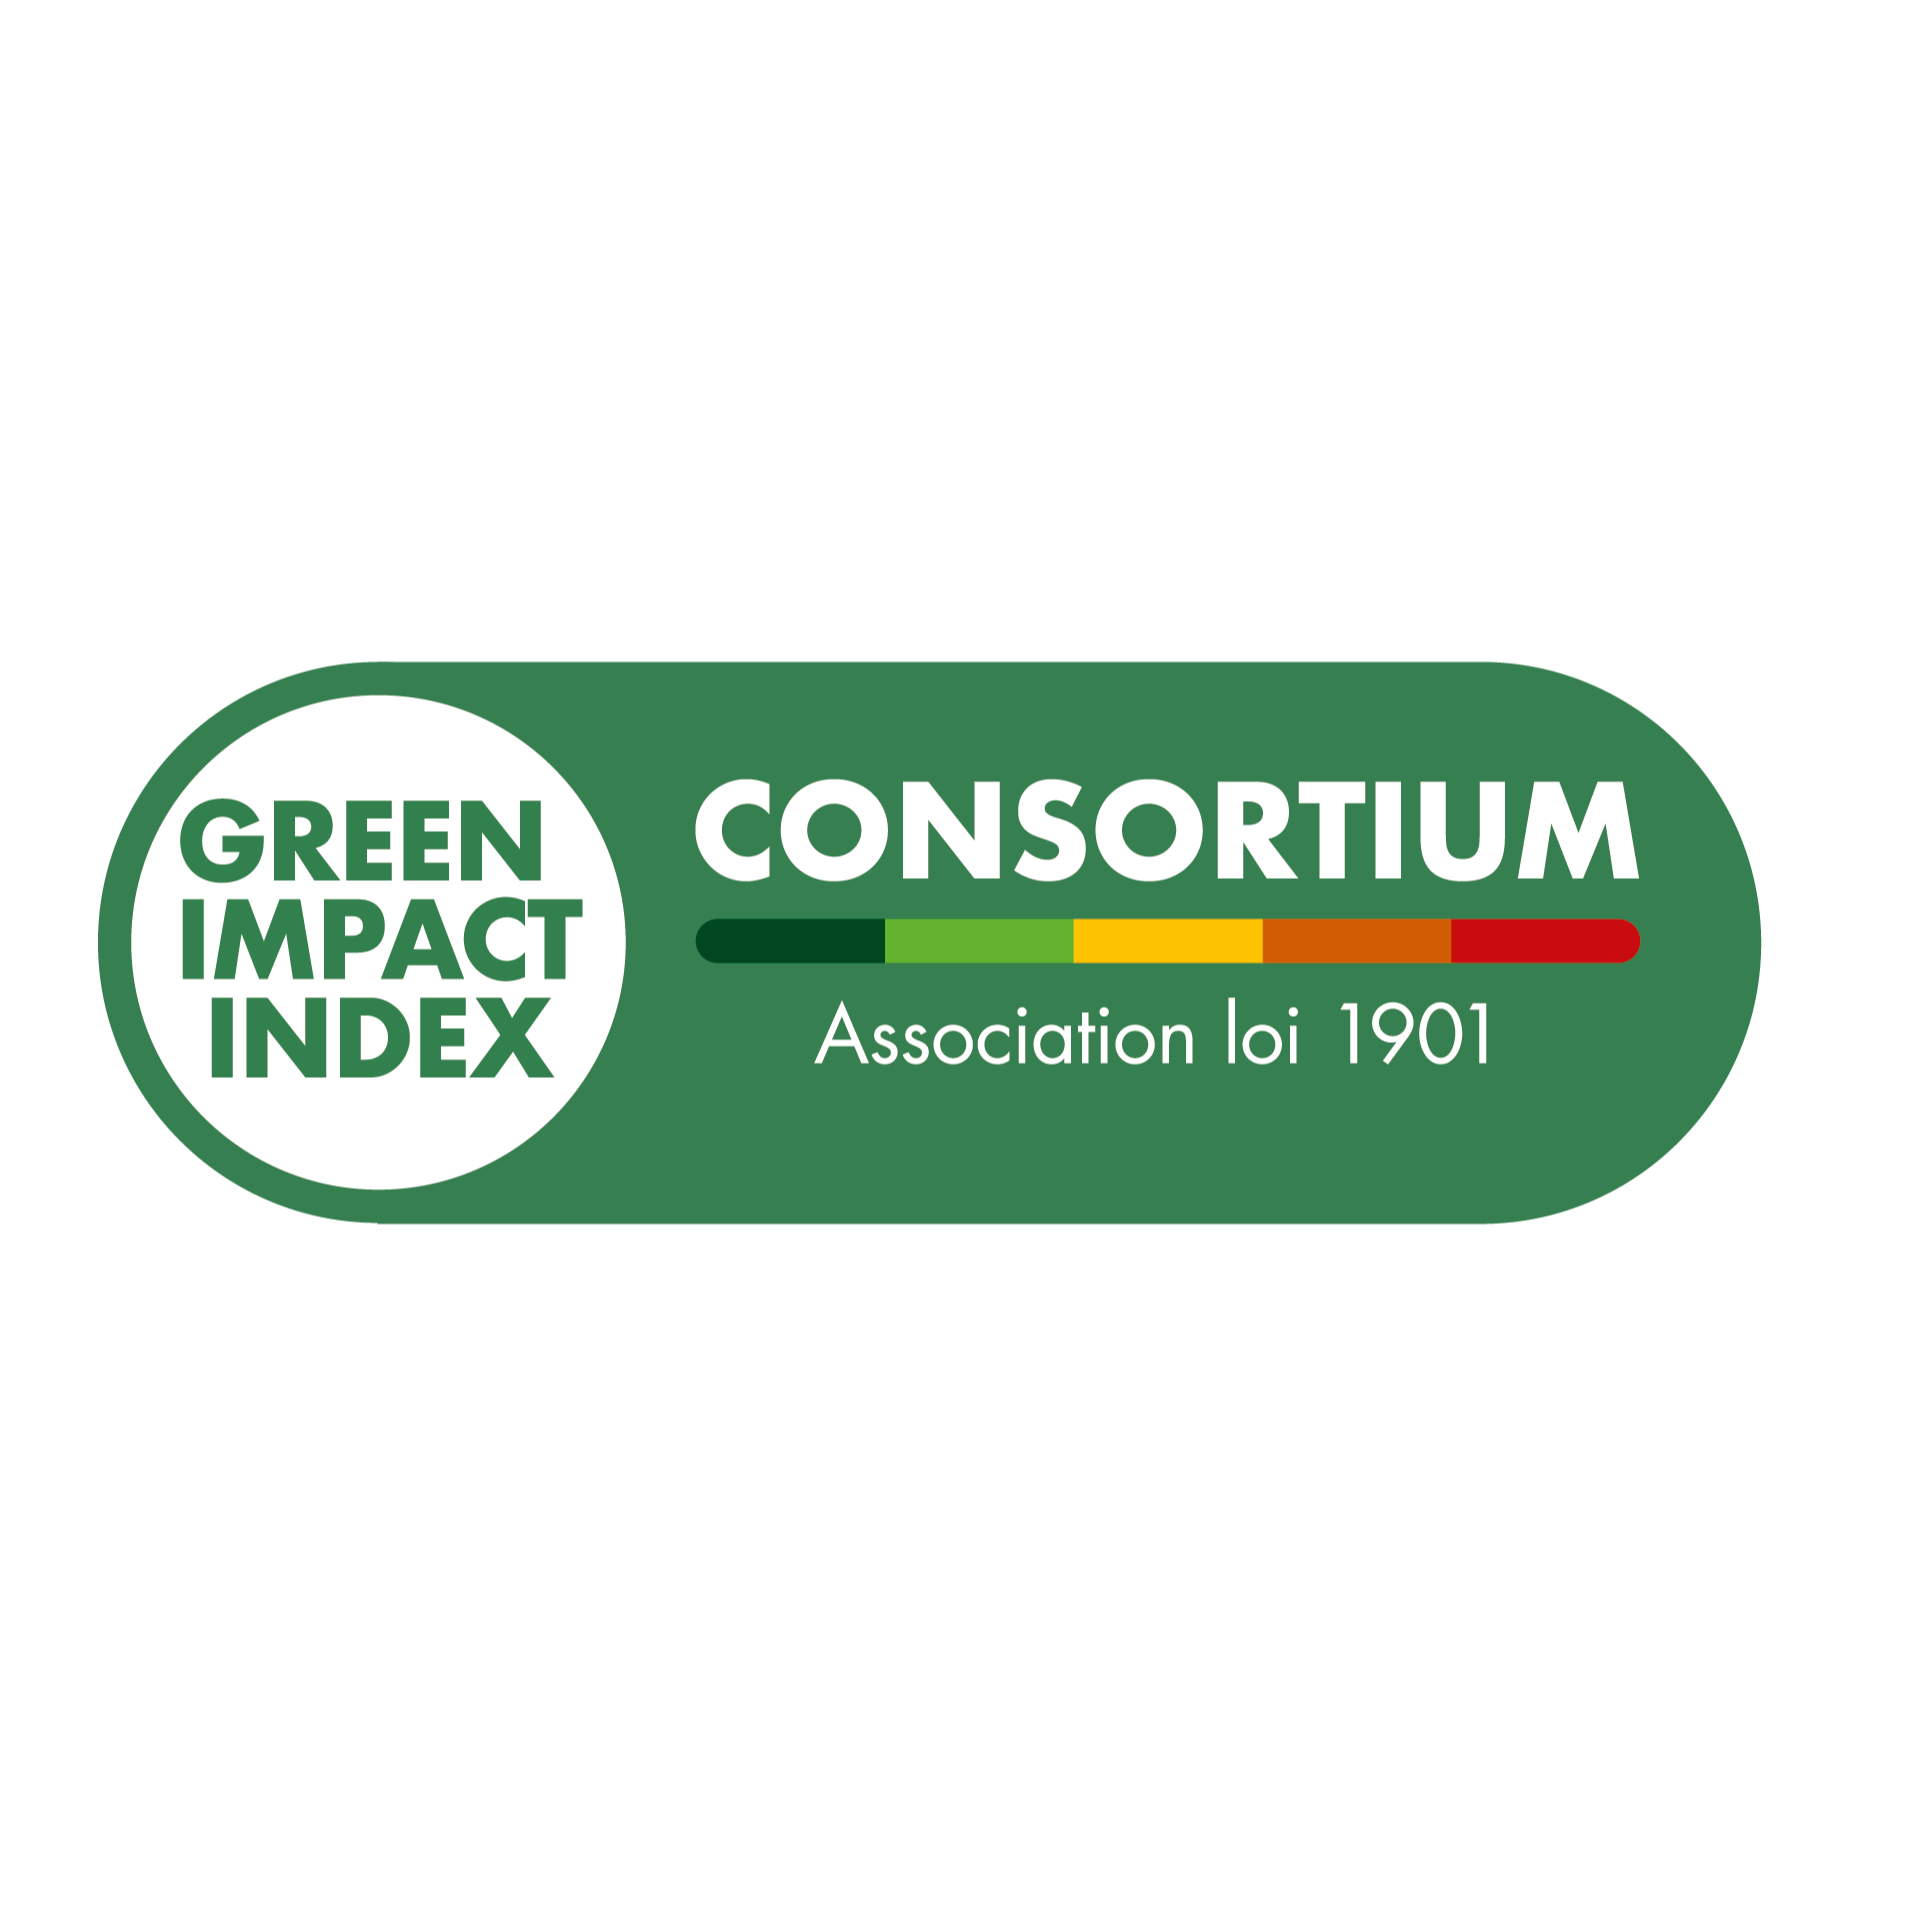 GREEN IMPACT INDEX CONSORTIUM